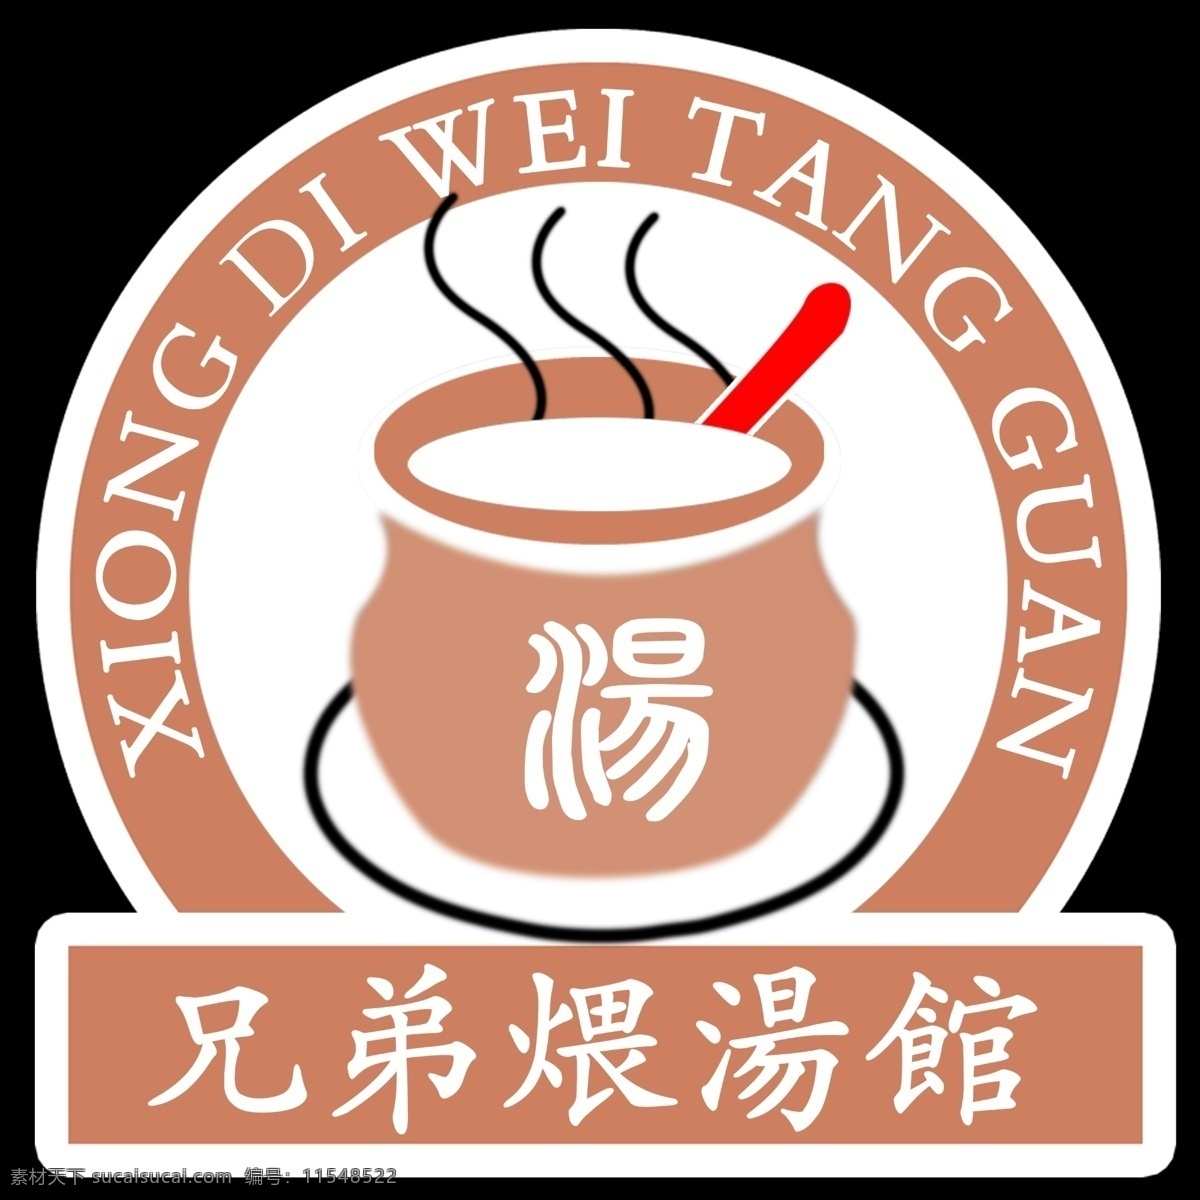 煨 汤 馆 logo 煨汤馆 兄弟煨汤馆 标志 煨汤